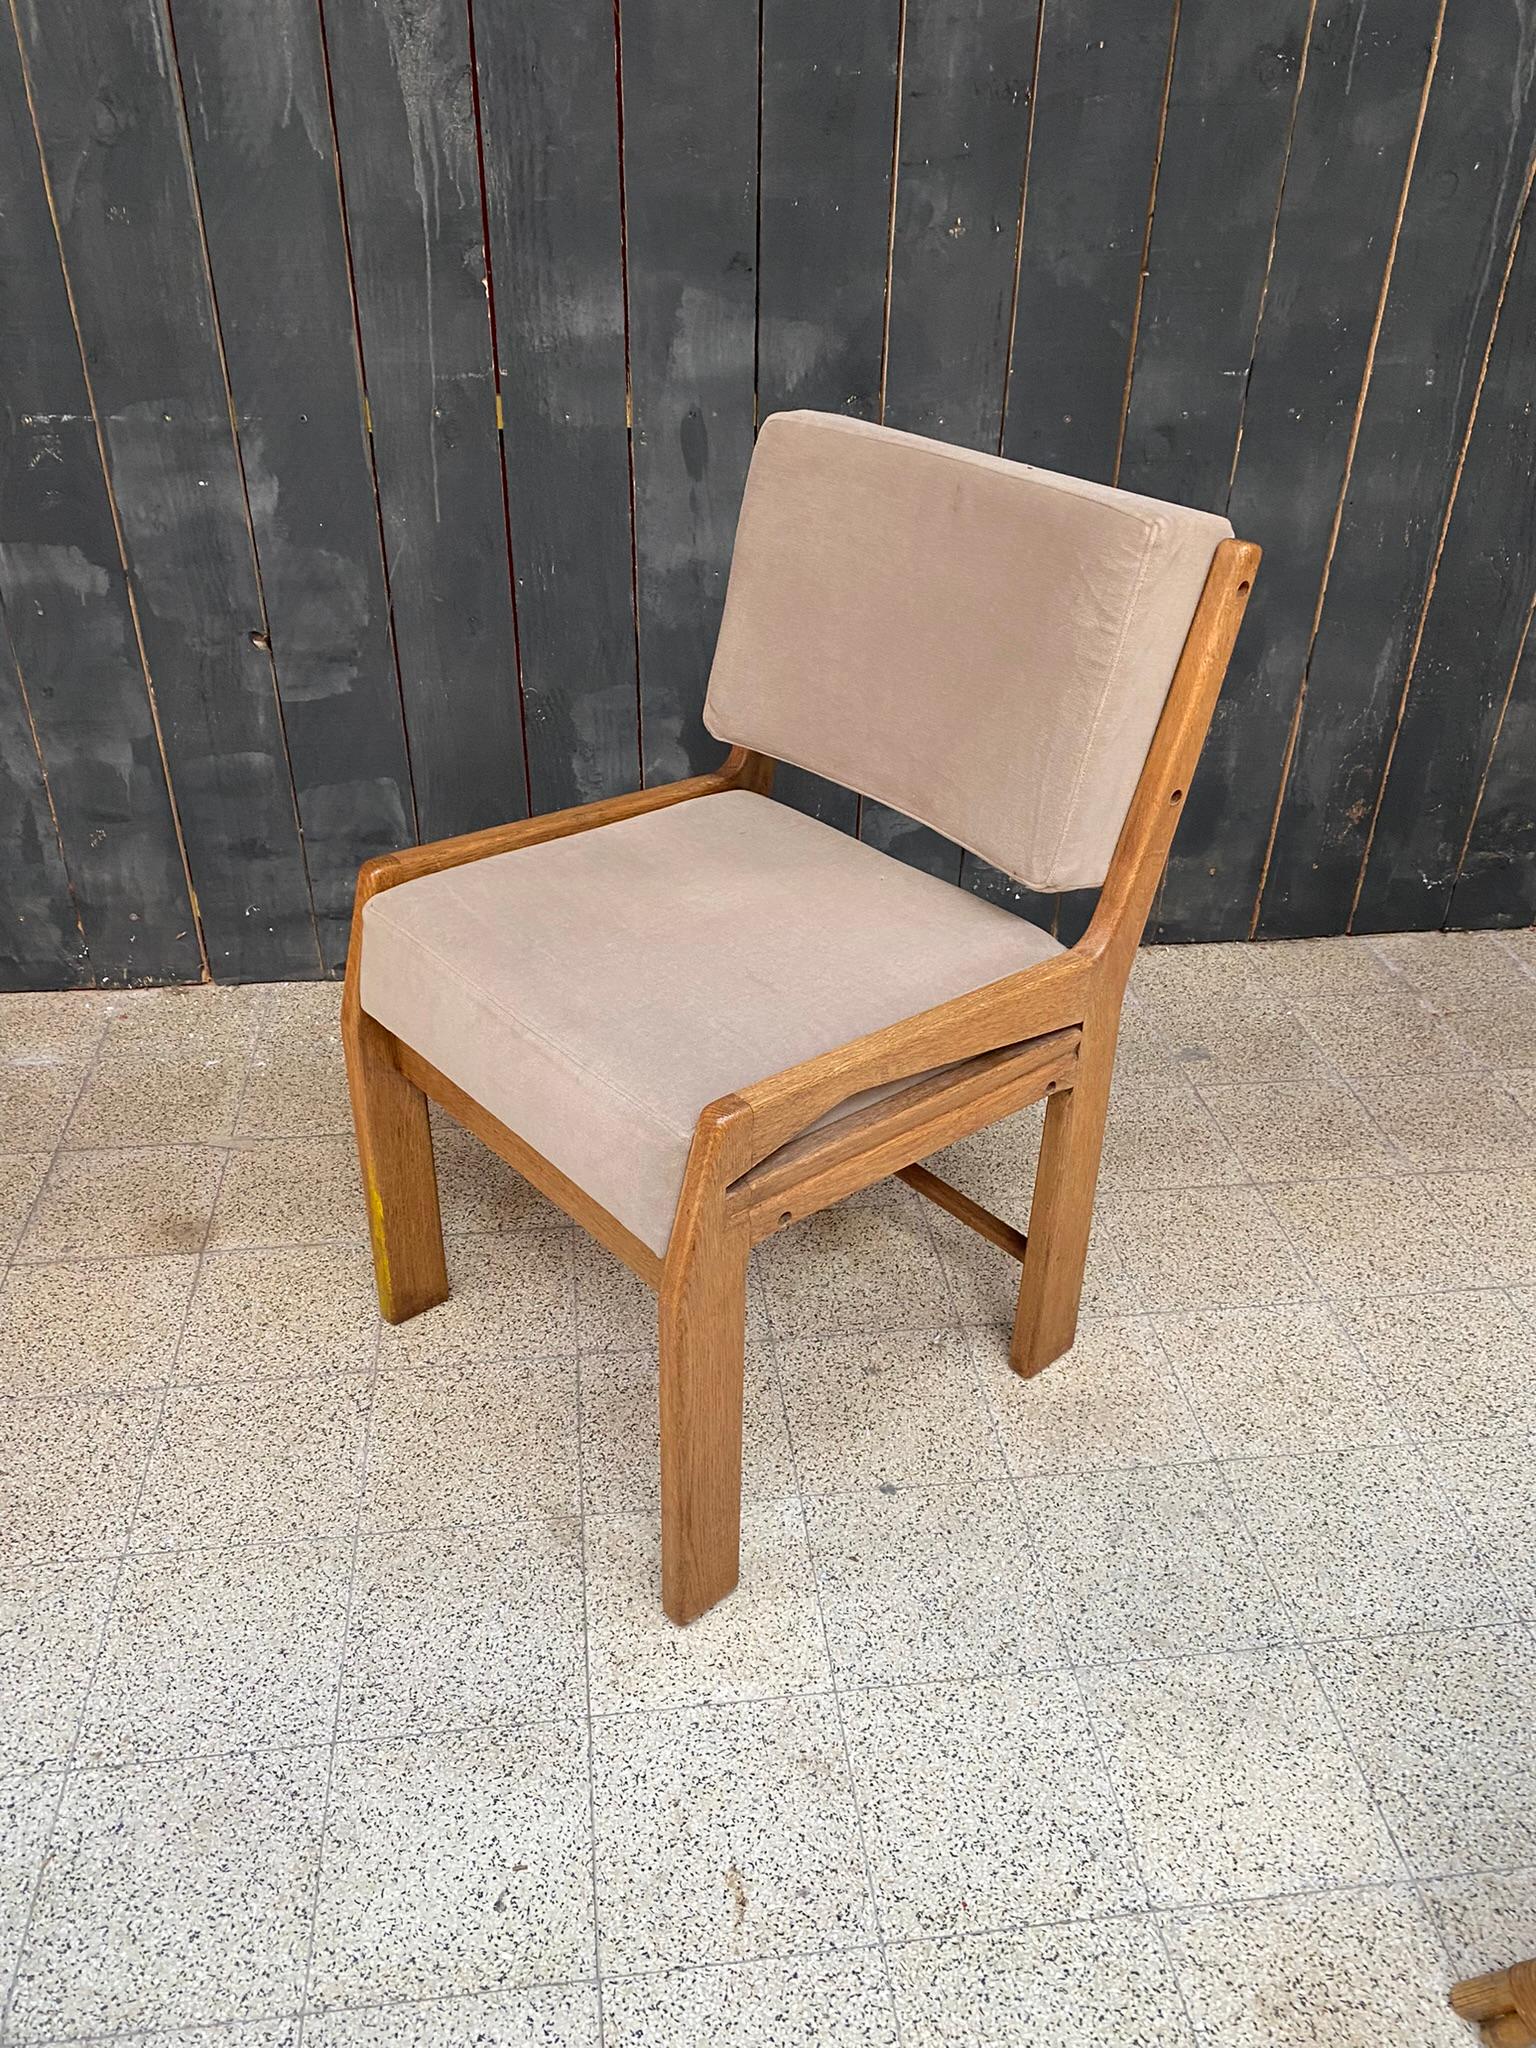 Guillerme et Chambron, desk chair, edition Votre Maison, circa 1950.
foam and fabric to change.
 